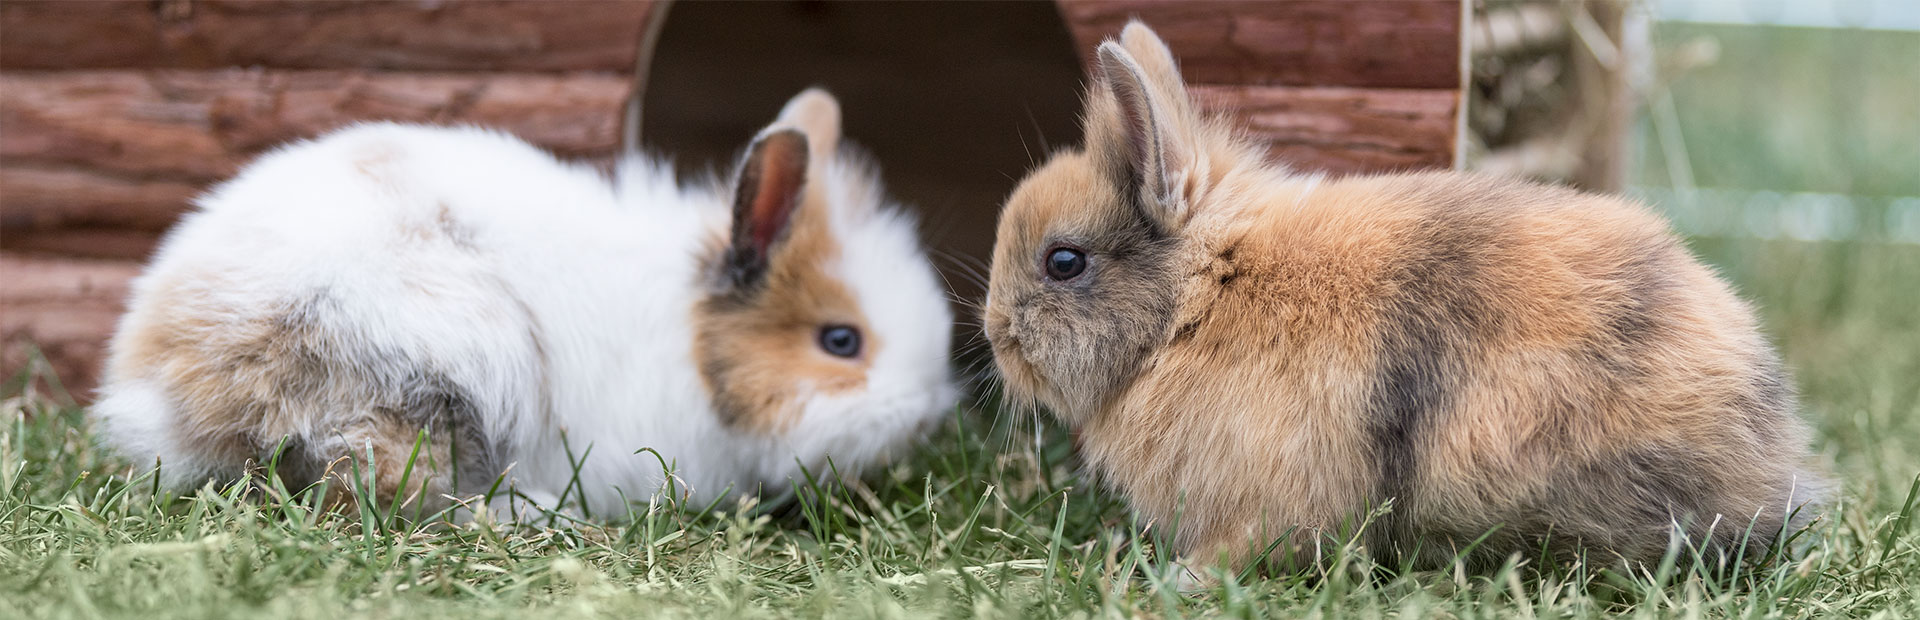 Zwei Kaninchen vor ihrem Häuschen im Garten